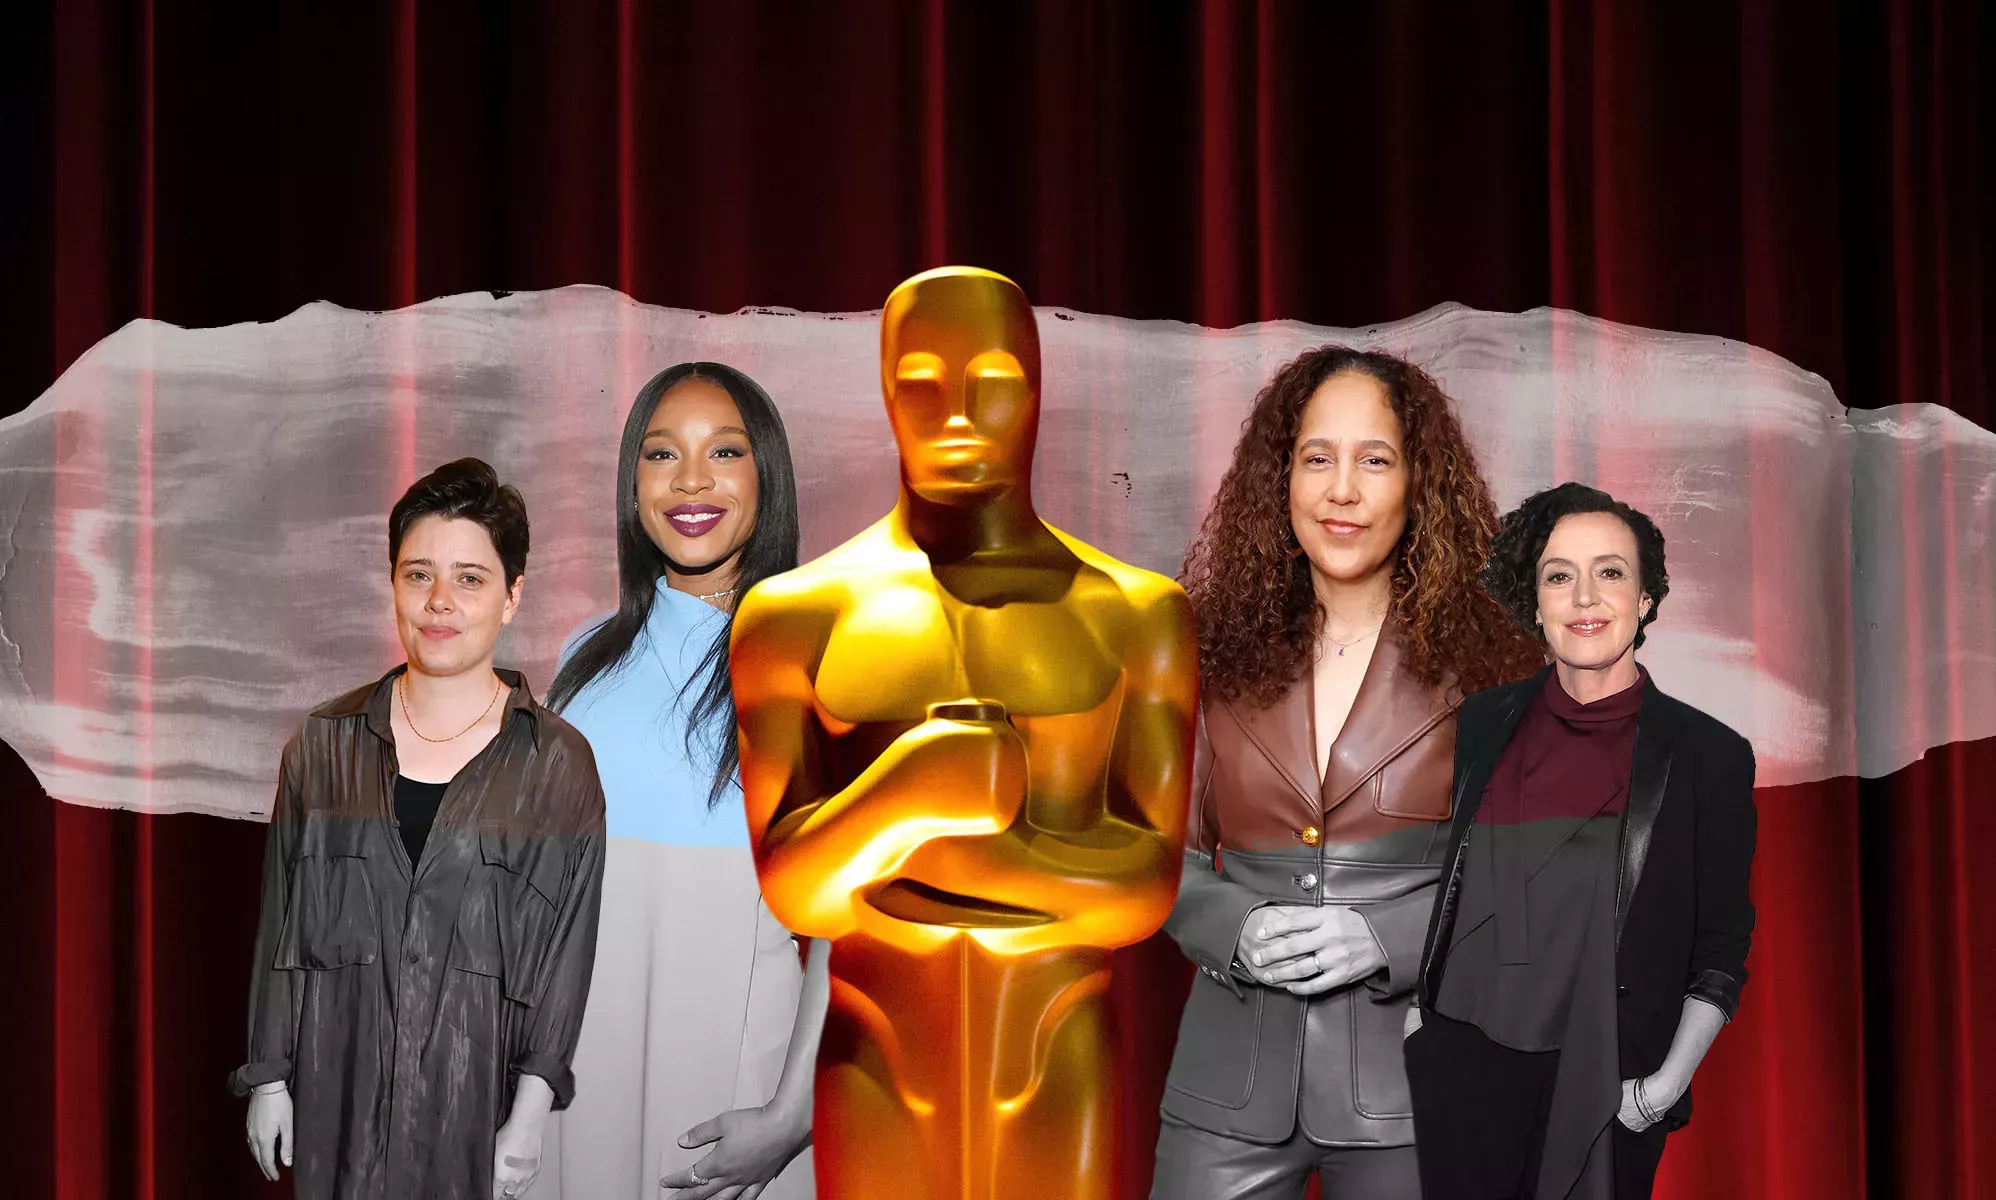 Los Oscar no han nominado a ninguna directora. Aquí tienes 5 mujeres cuyo trabajo puedes apoyar ahora mismo